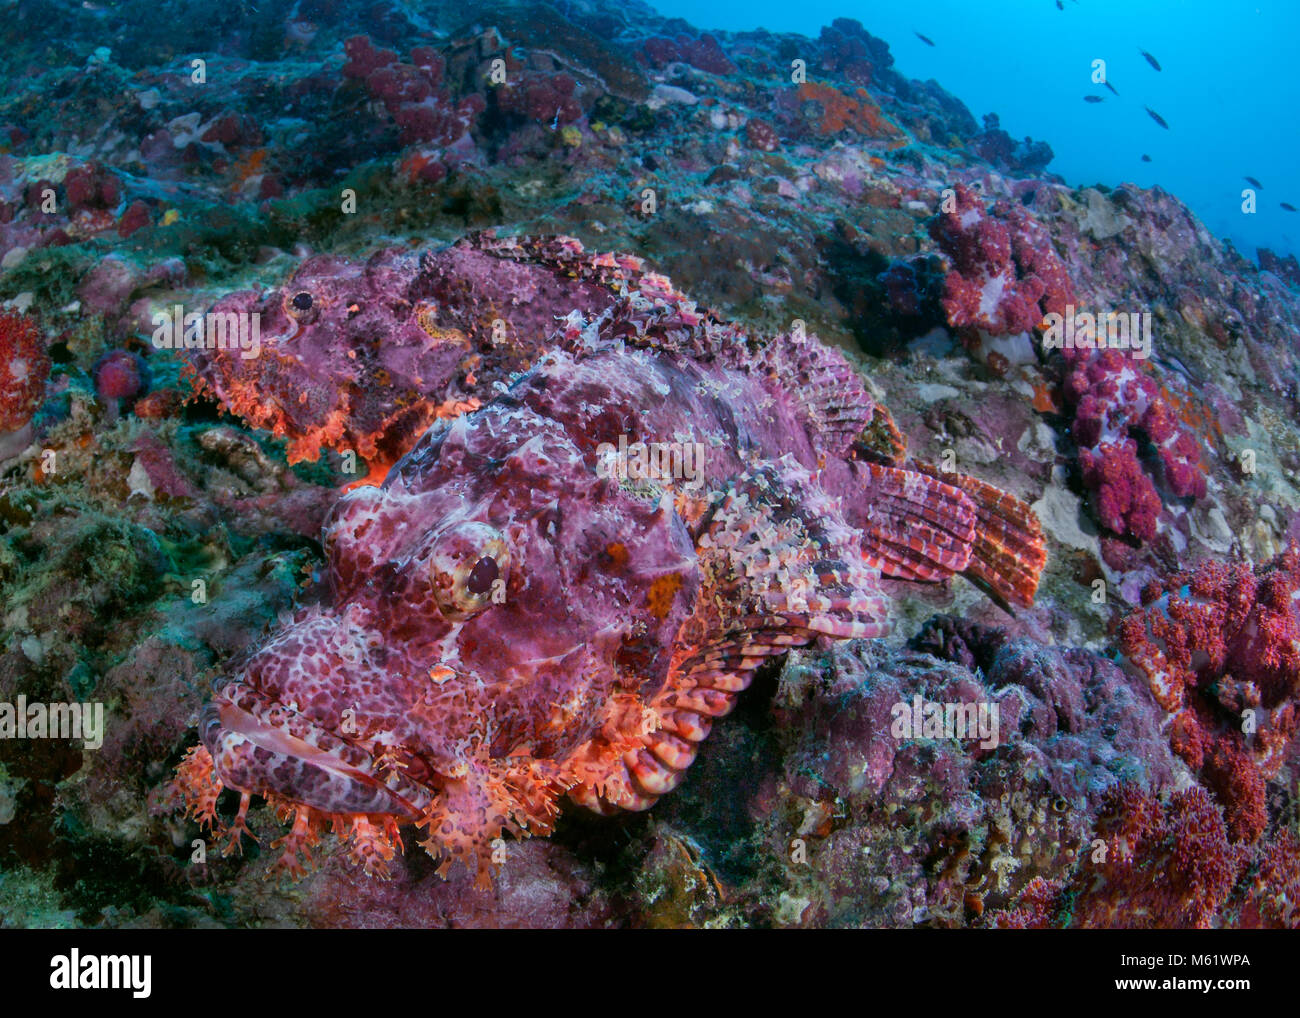 Paar bärtige Drachenkopf haben keine, wo auf eine sterbende Korallenriff zu verstecken. Richelieu Rock, Andaman Sea, Thailand. Stockfoto